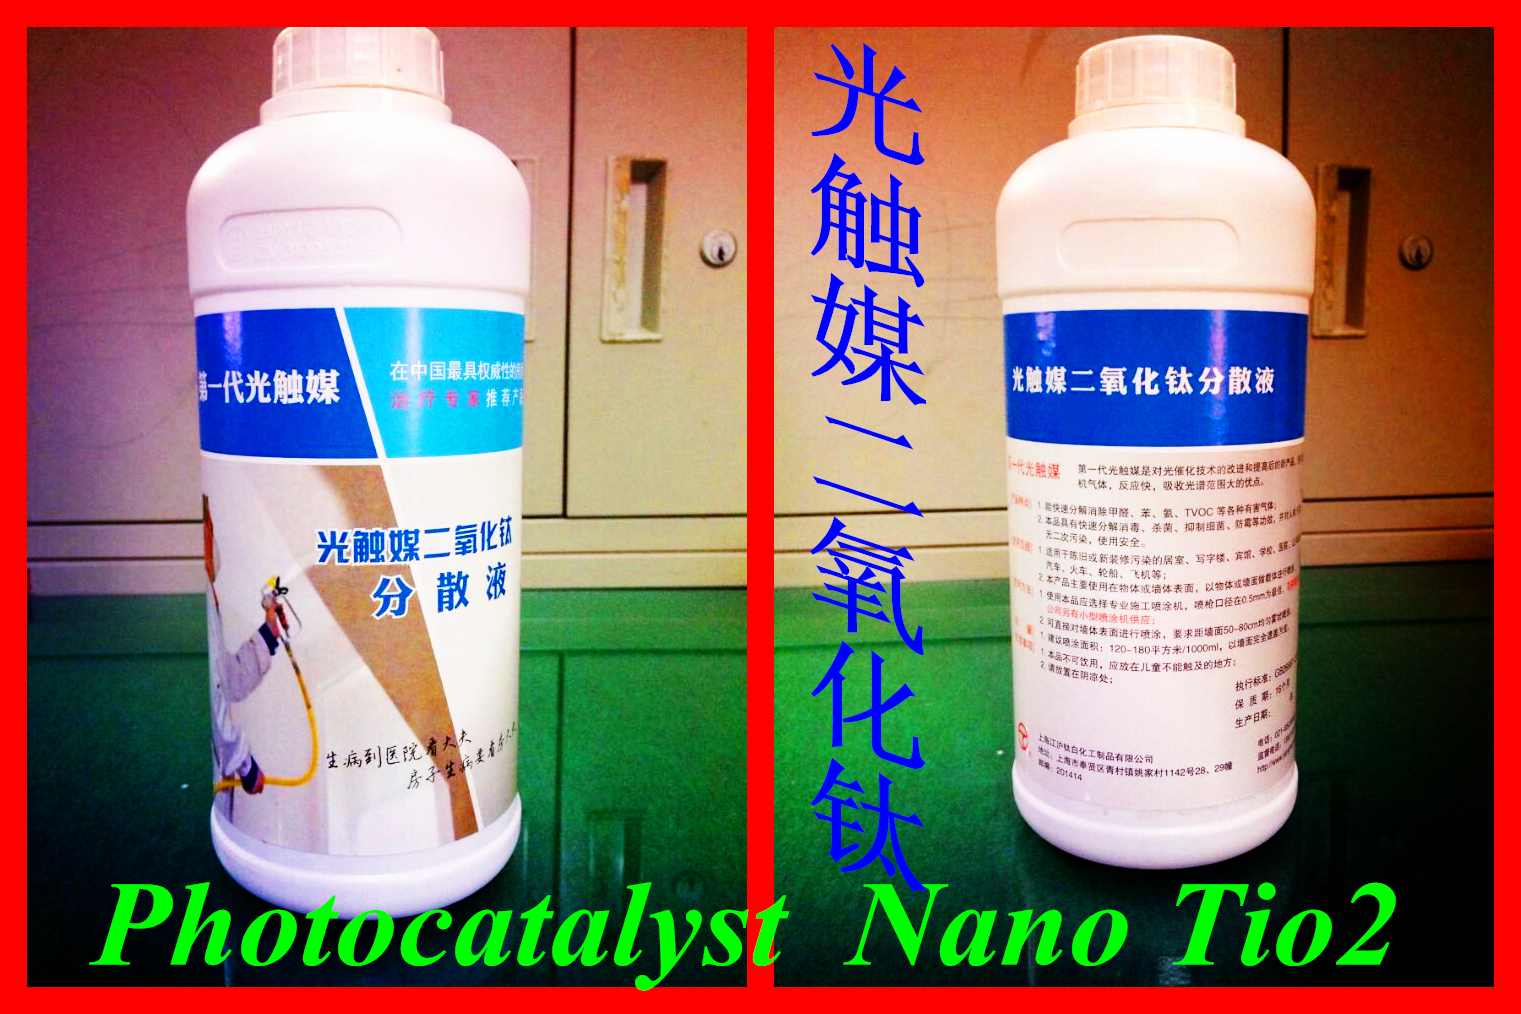 納米二氧化鈦光觸媒除甲醛